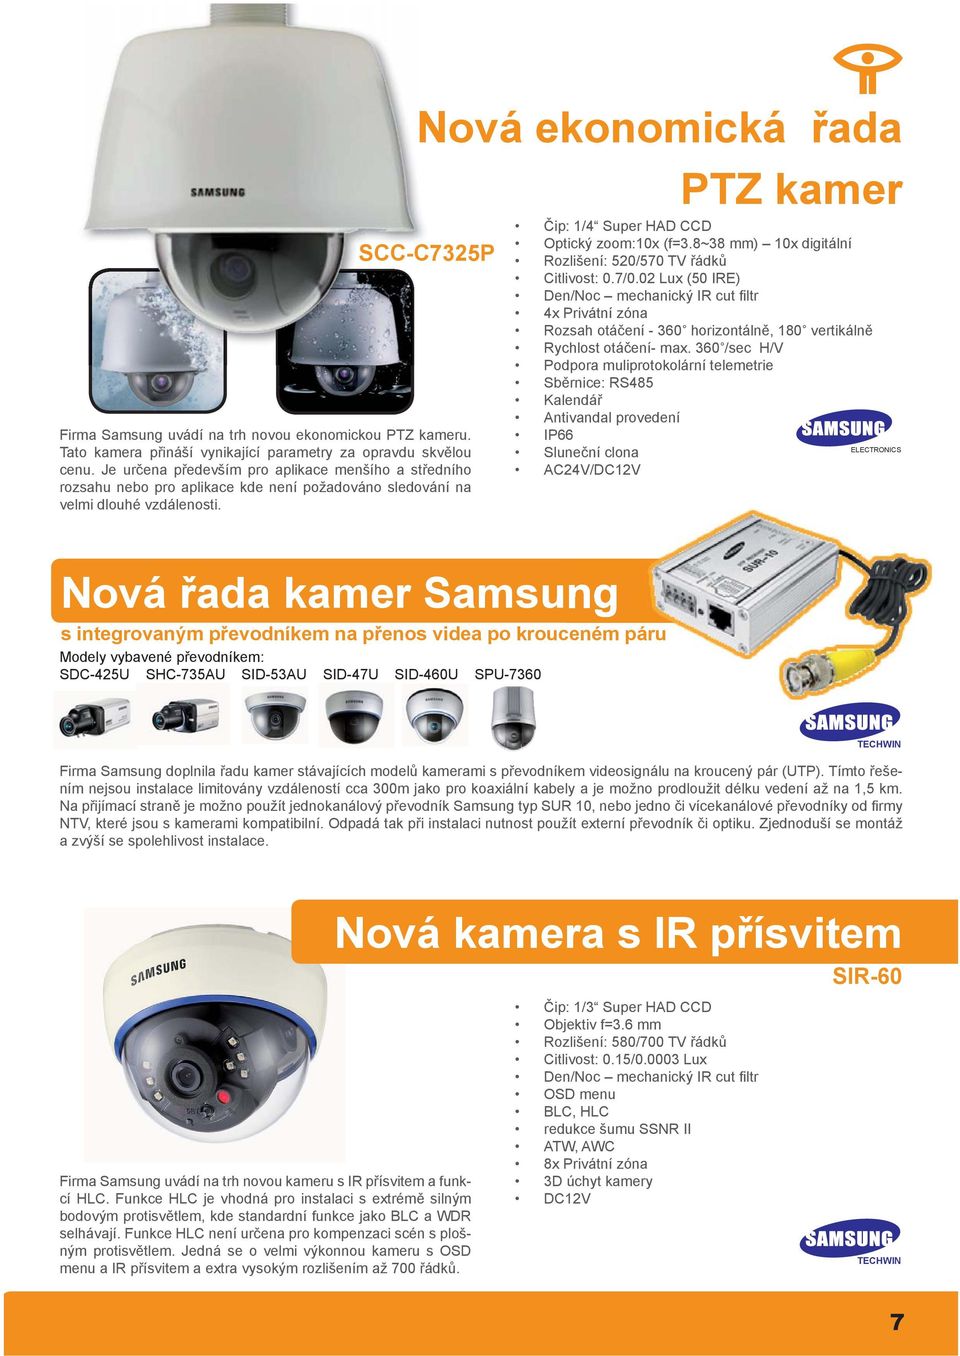 Nová řada kamer Samsung Nová ekonomická řada PTZ kamer SCC-C7325P s integrovaným převodníkem na přenos videa po krouceném páru Modely vybavené převodníkem: SDC-425U SHC-735AU SID-53AU SID-47U